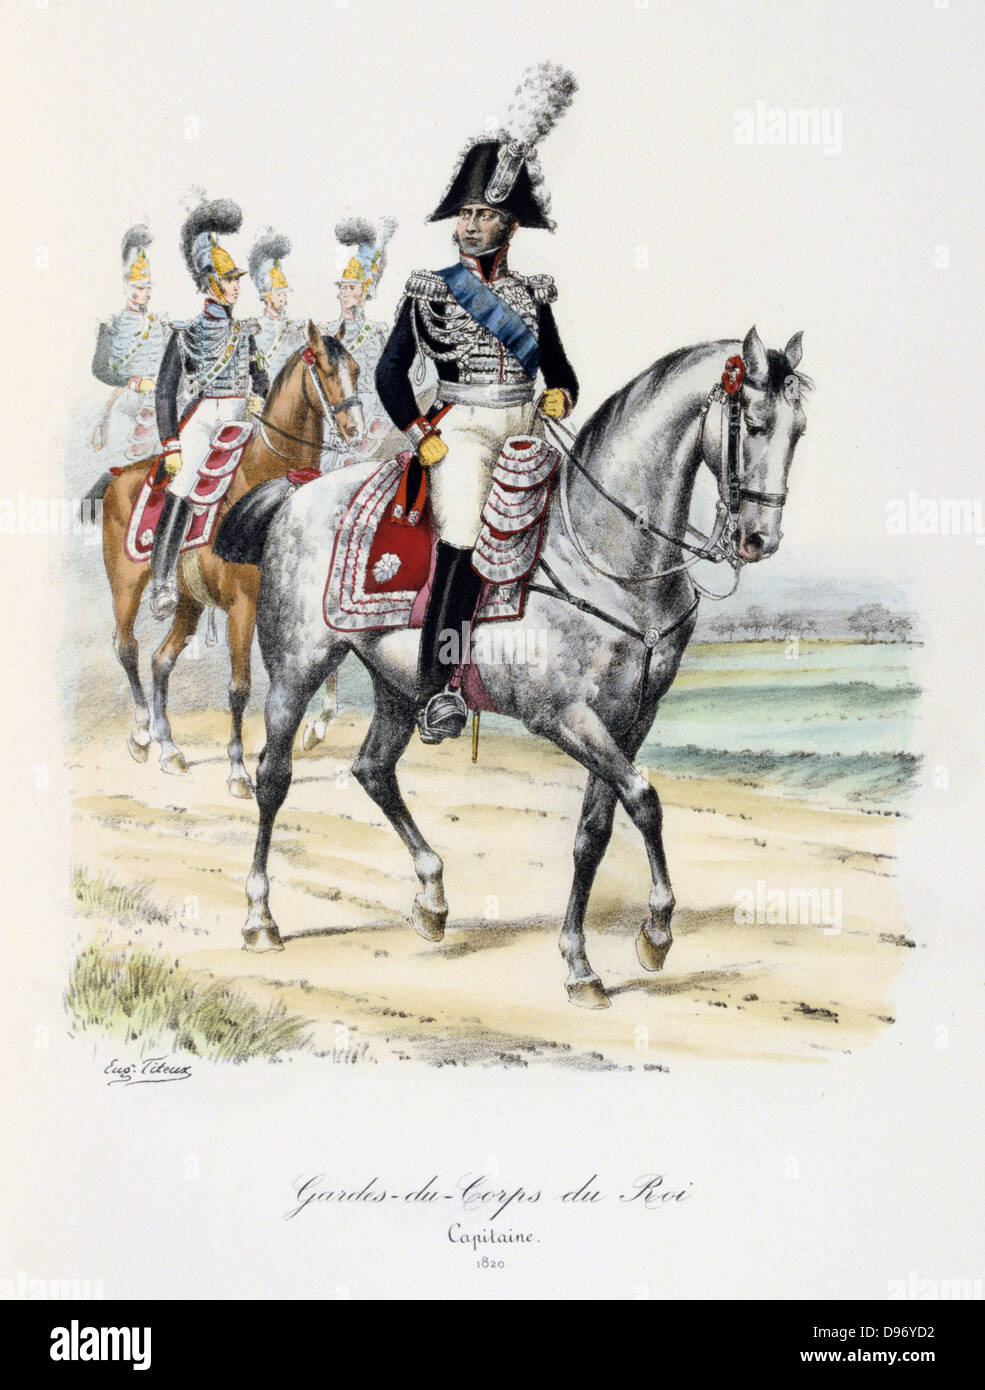 Mounted Captain of the King's guard, 1820. From 'Histoire de la maison militaire du Roi de 1814 a 1830' by Eugene Titeux, Paris, 1890. Stock Photo